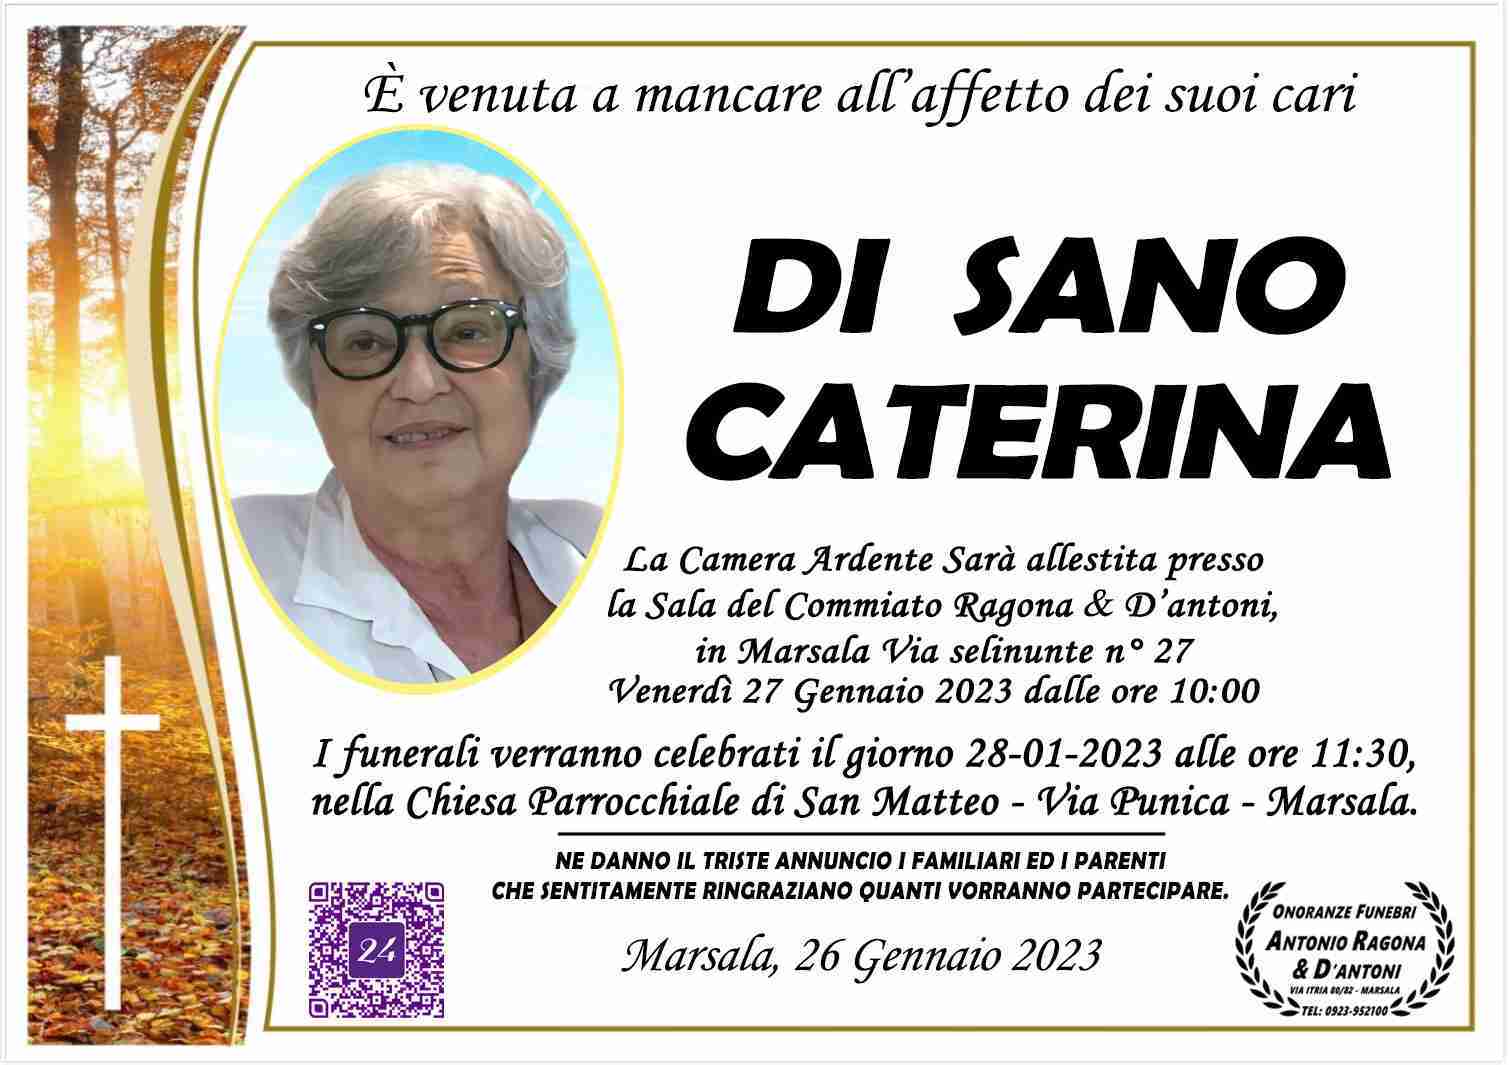 Caterina Di Sano